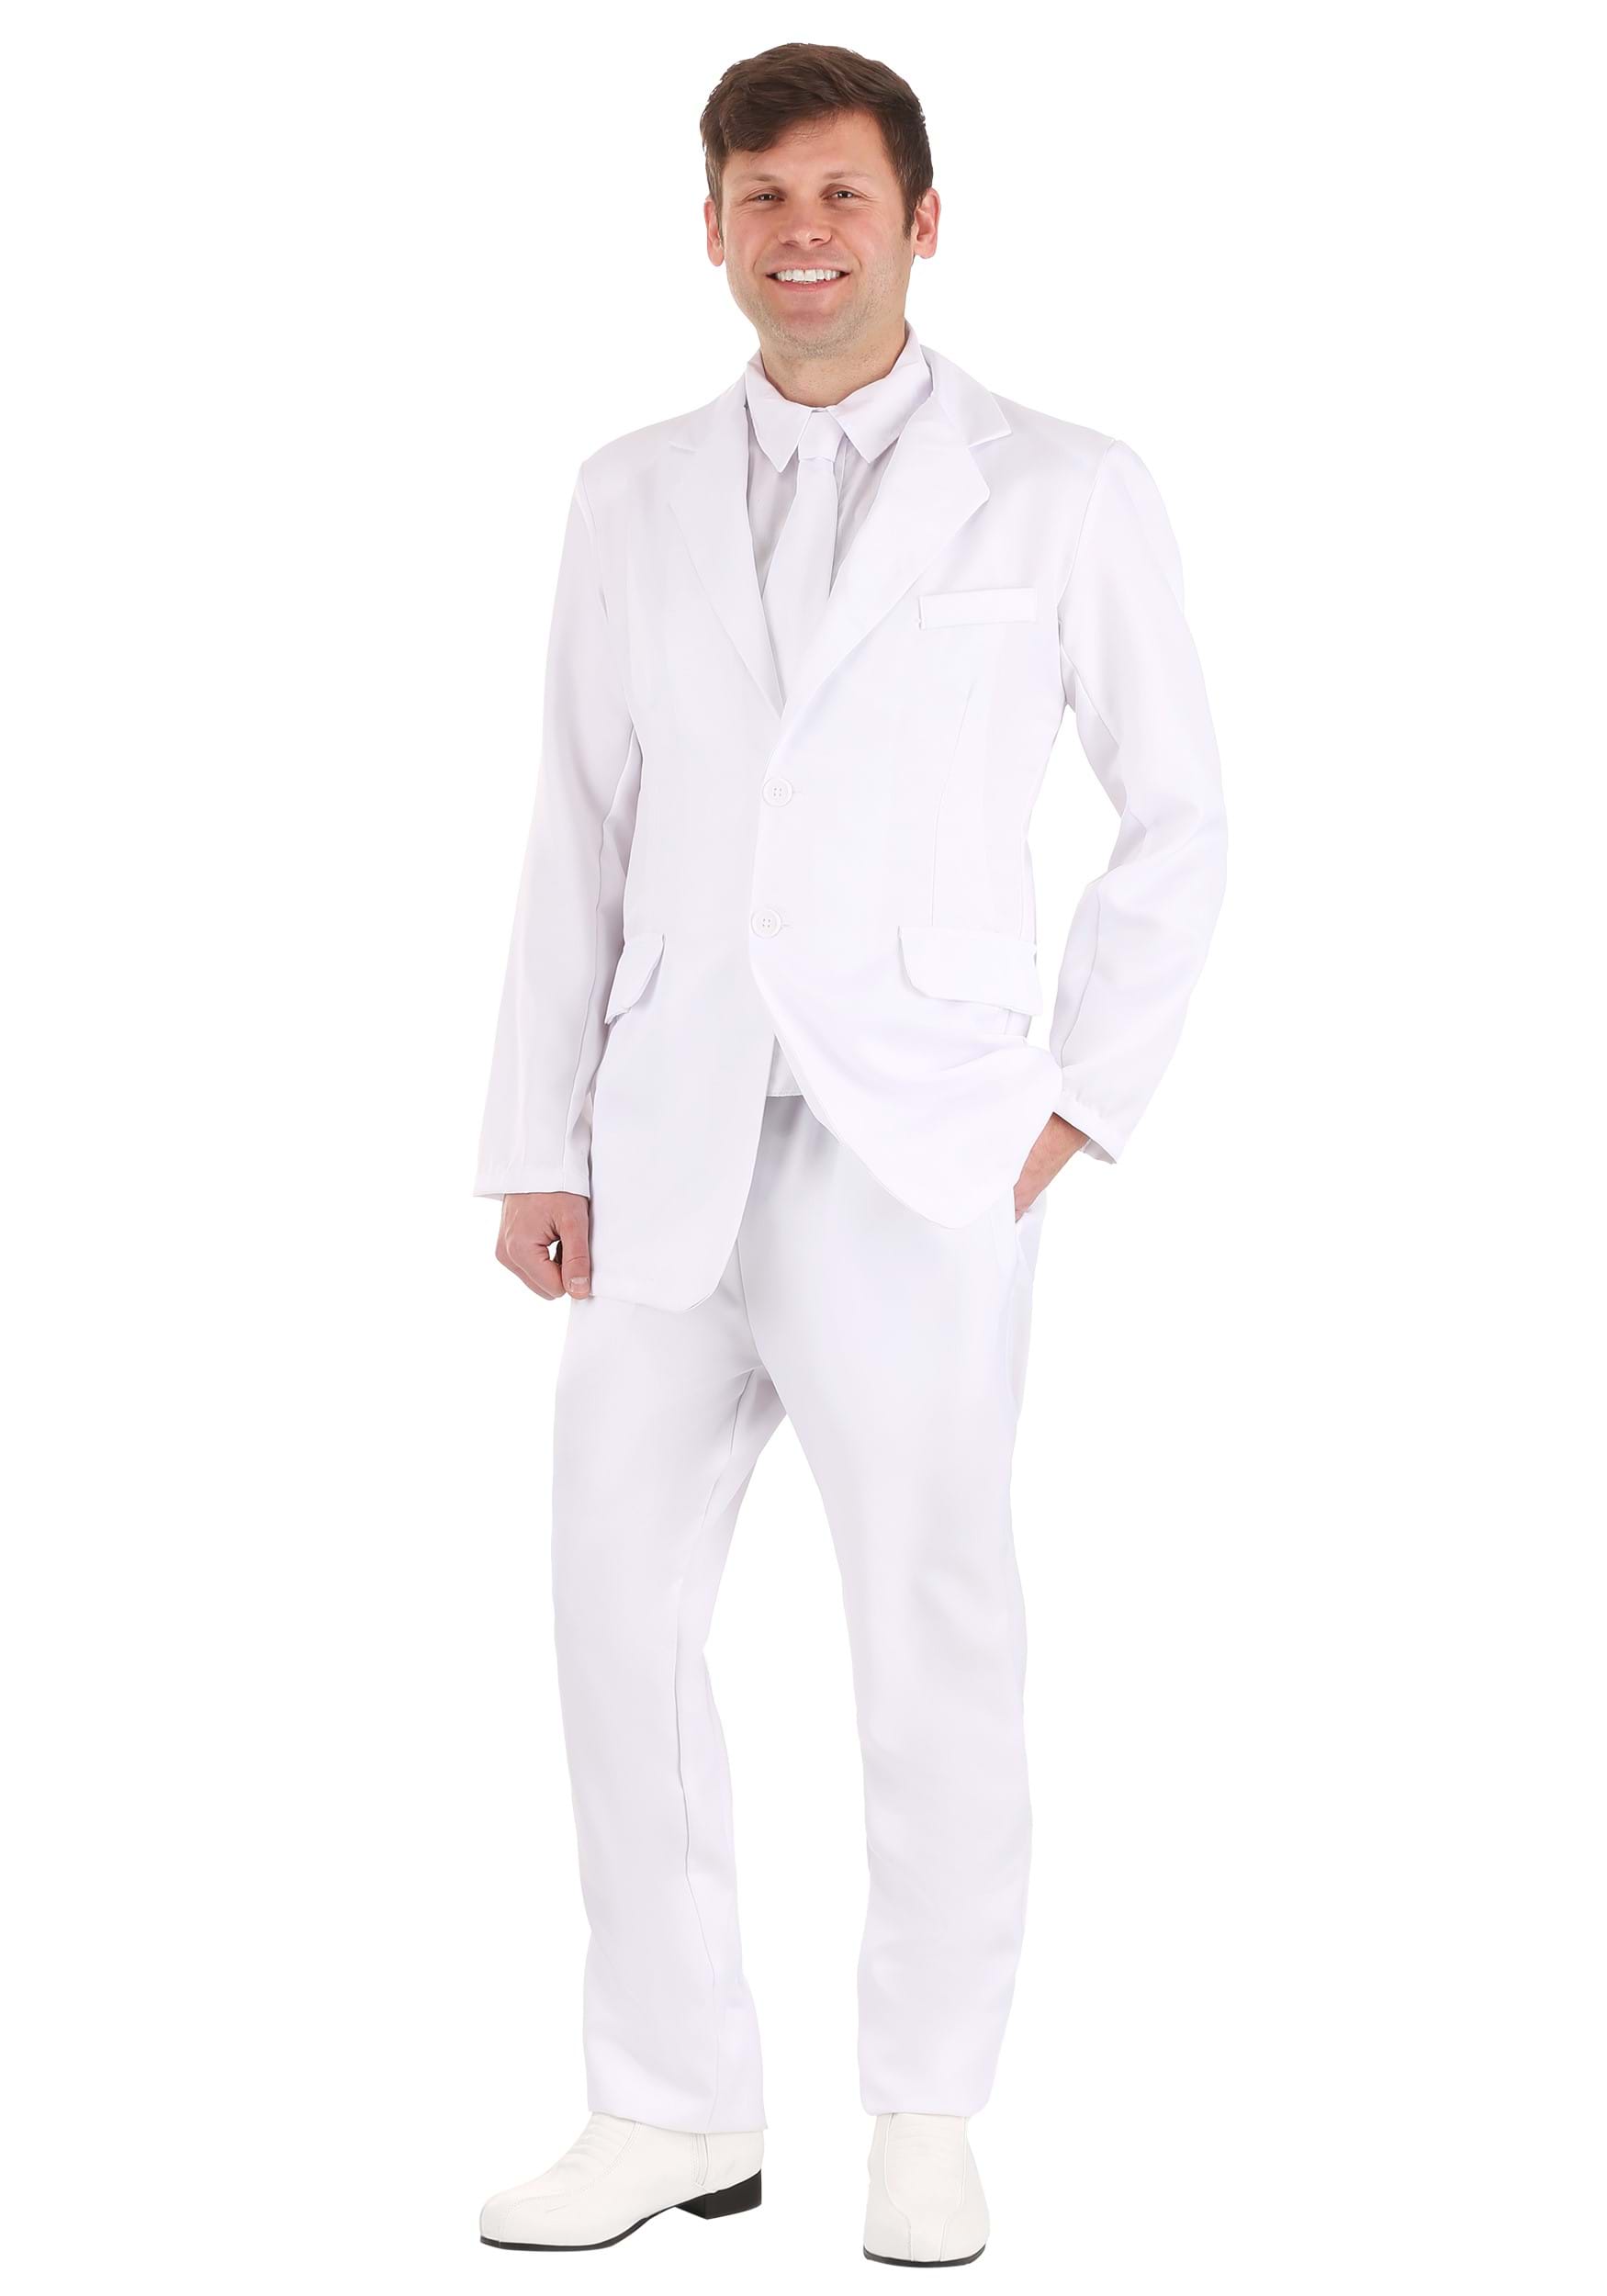 mamífero Para buscar refugio Solitario Disfraz de traje blanco para hombre